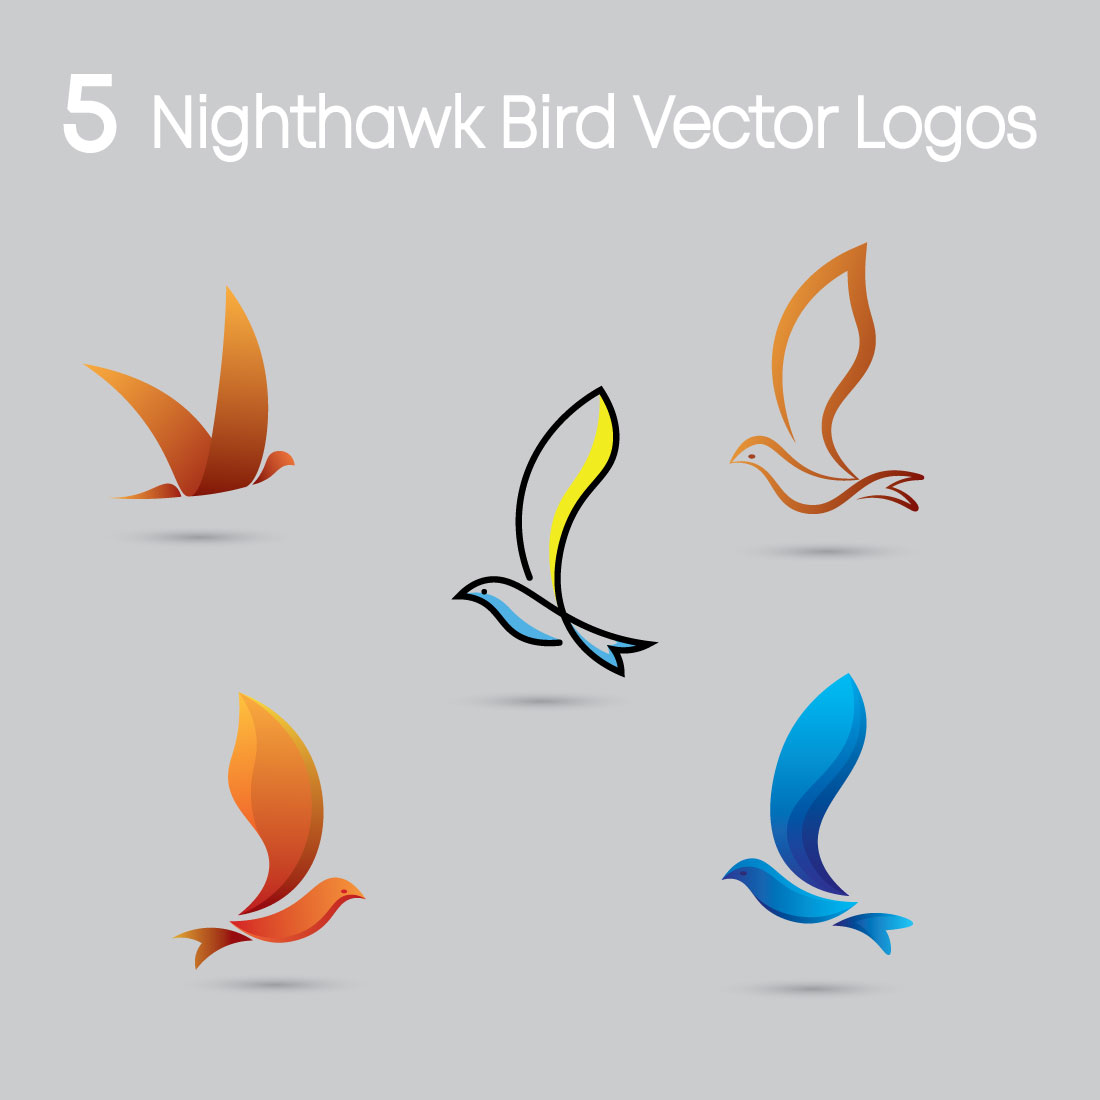 5 Nighthawk Bird Vector Logos preview image.